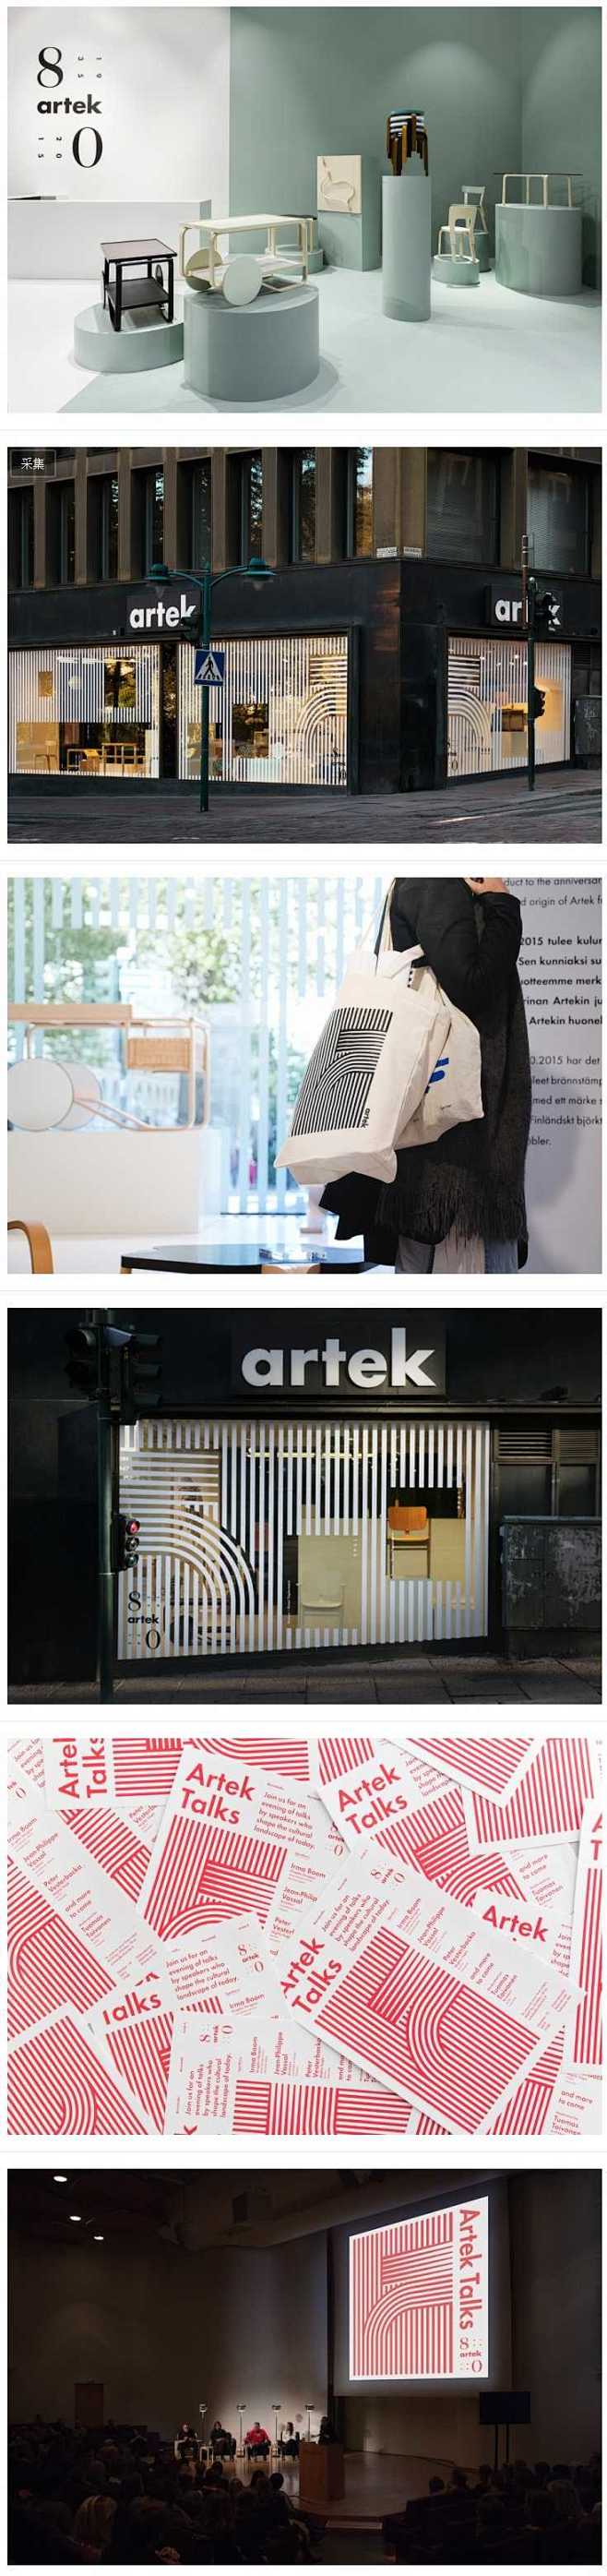 家具品牌店Artek 80周年视觉设计 ...